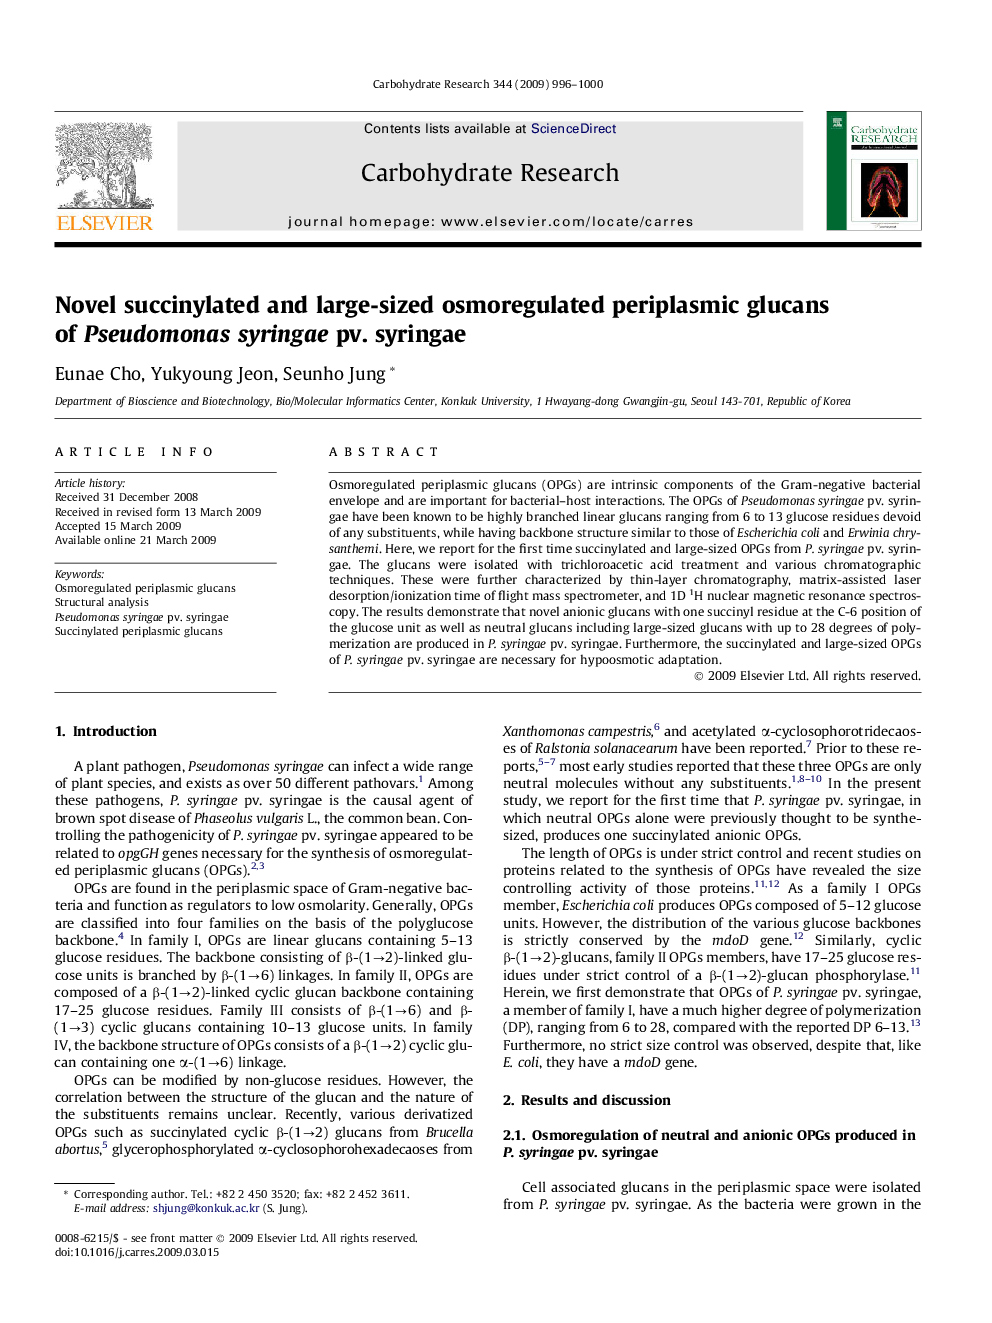 Novel succinylated and large-sized osmoregulated periplasmic glucans of Pseudomonas syringae pv. syringae